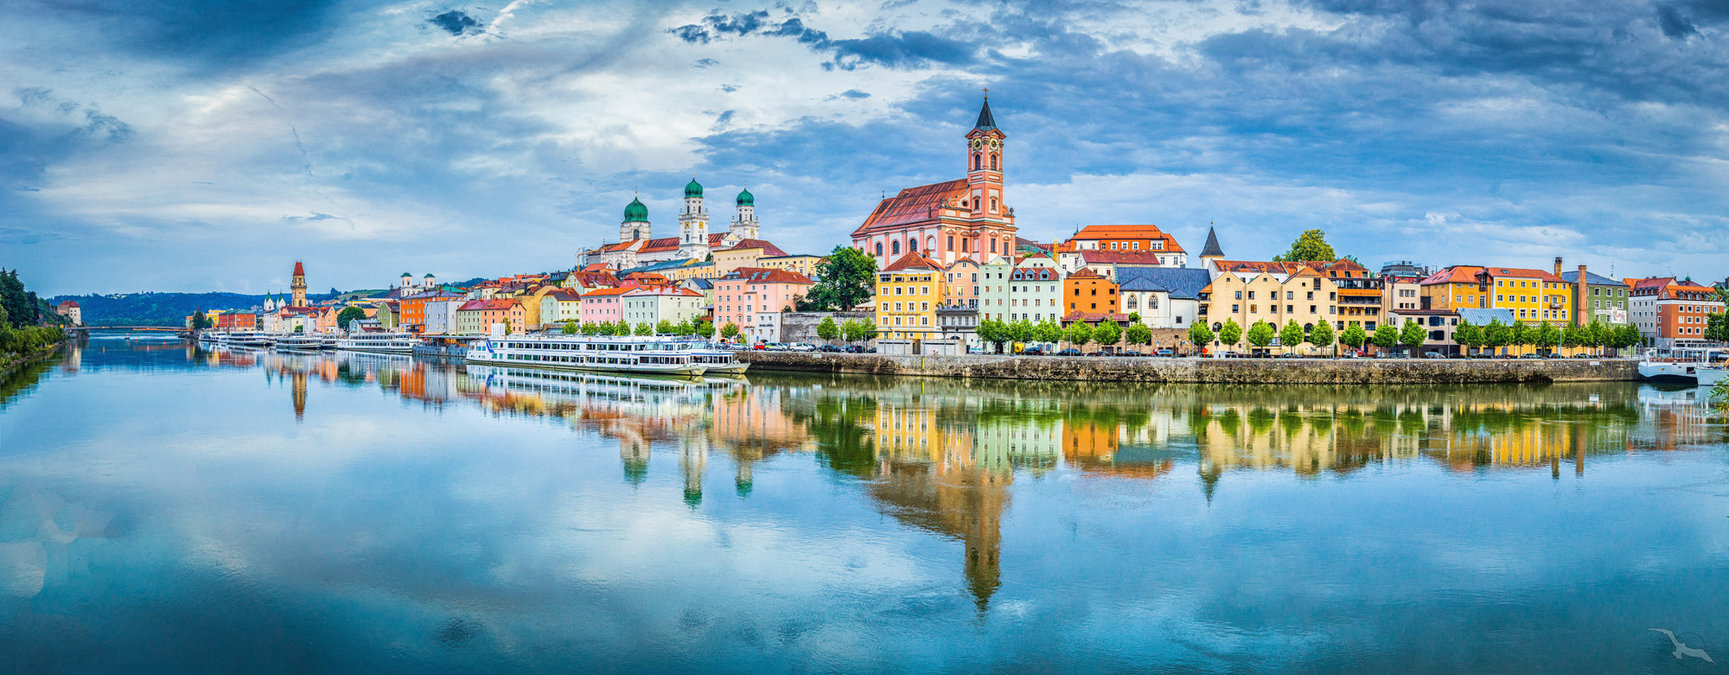 Donauflair: Passau - Wien - Esztergom - Budapest - Bratislava - Dürnstein - Passau mit der MS Adora